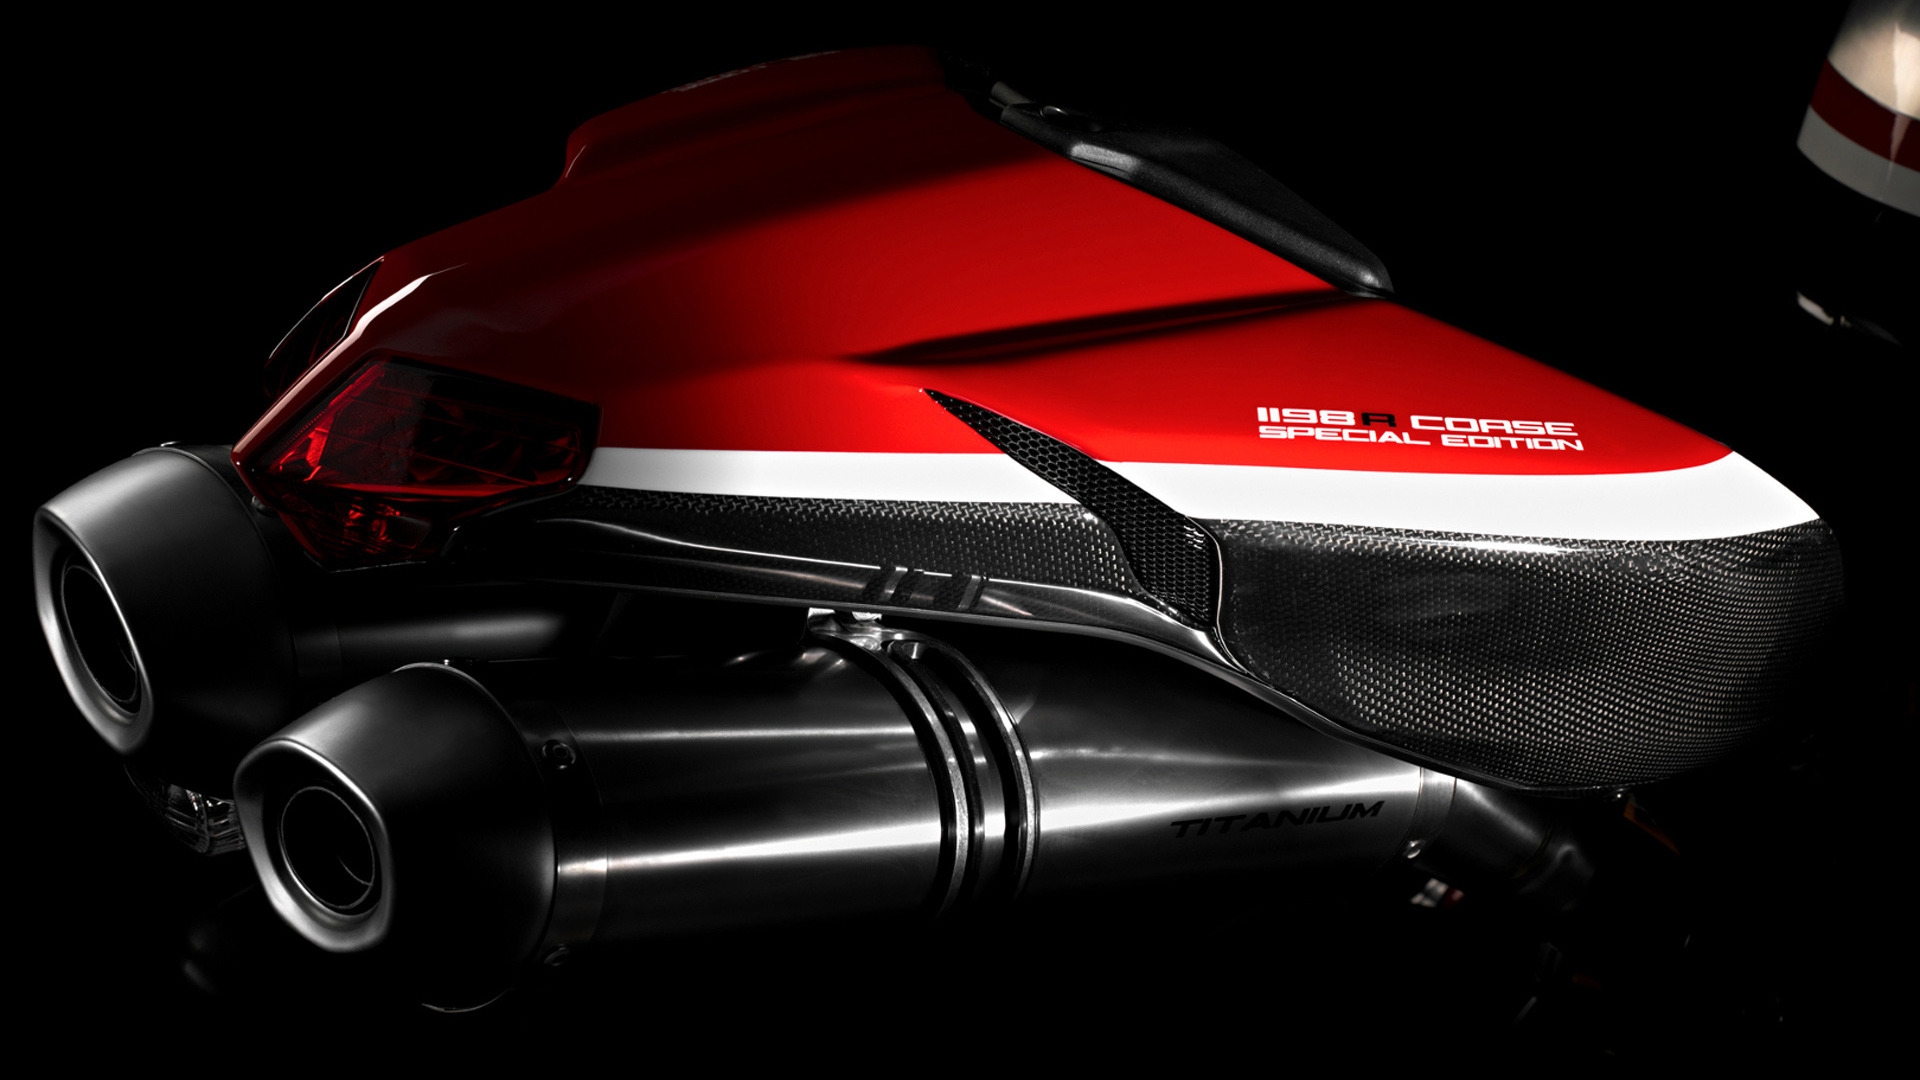 Ducati Superbike-1198-R-Corse Rear for 1920 x 1080 HDTV 1080p resolution